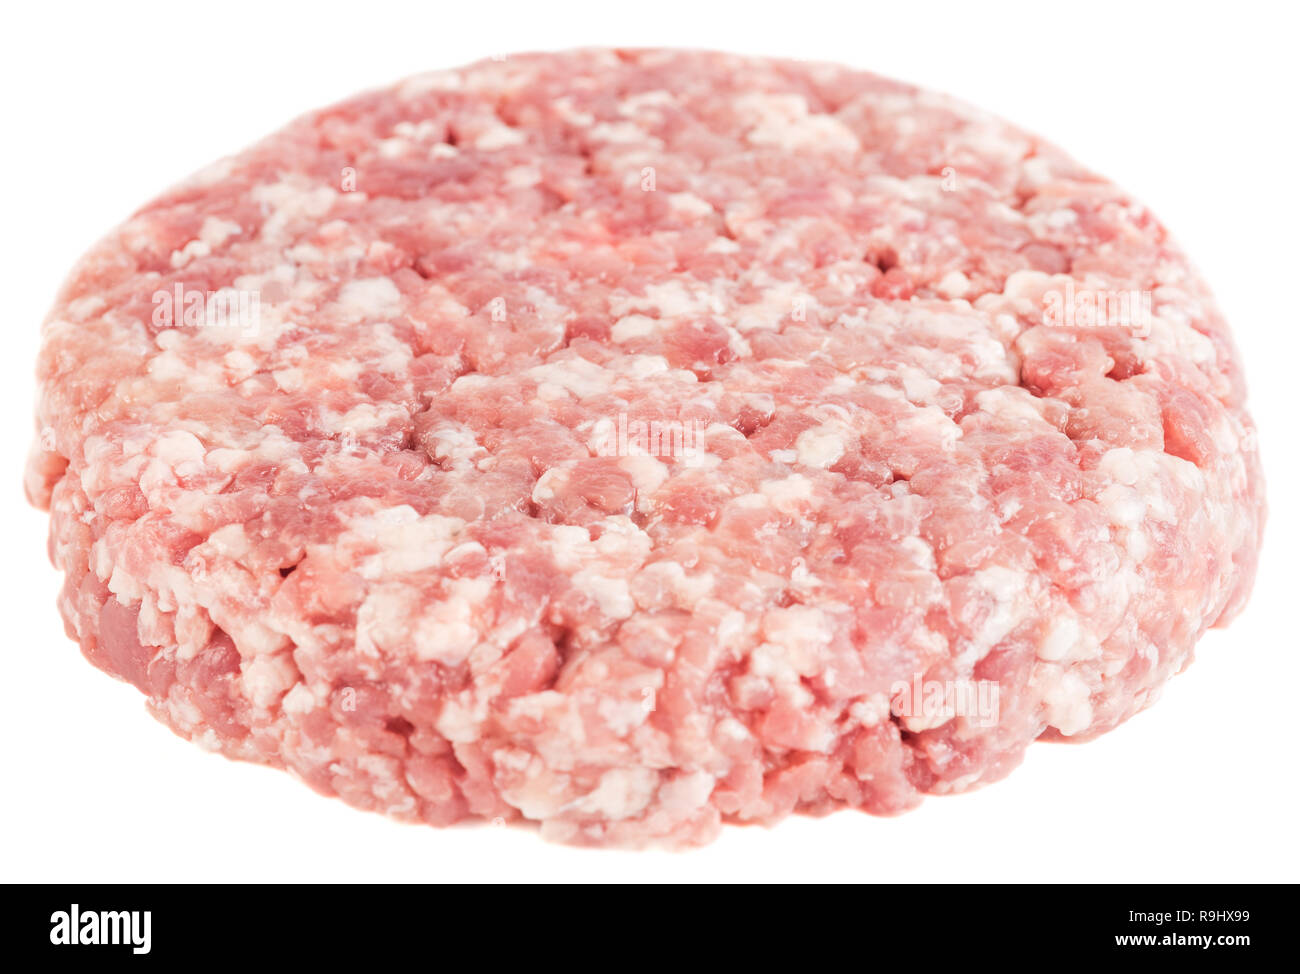 Materie macinate di macinato di manzo o di maiale pronto per la cottura di isolati su sfondo bianco. Foto Stock